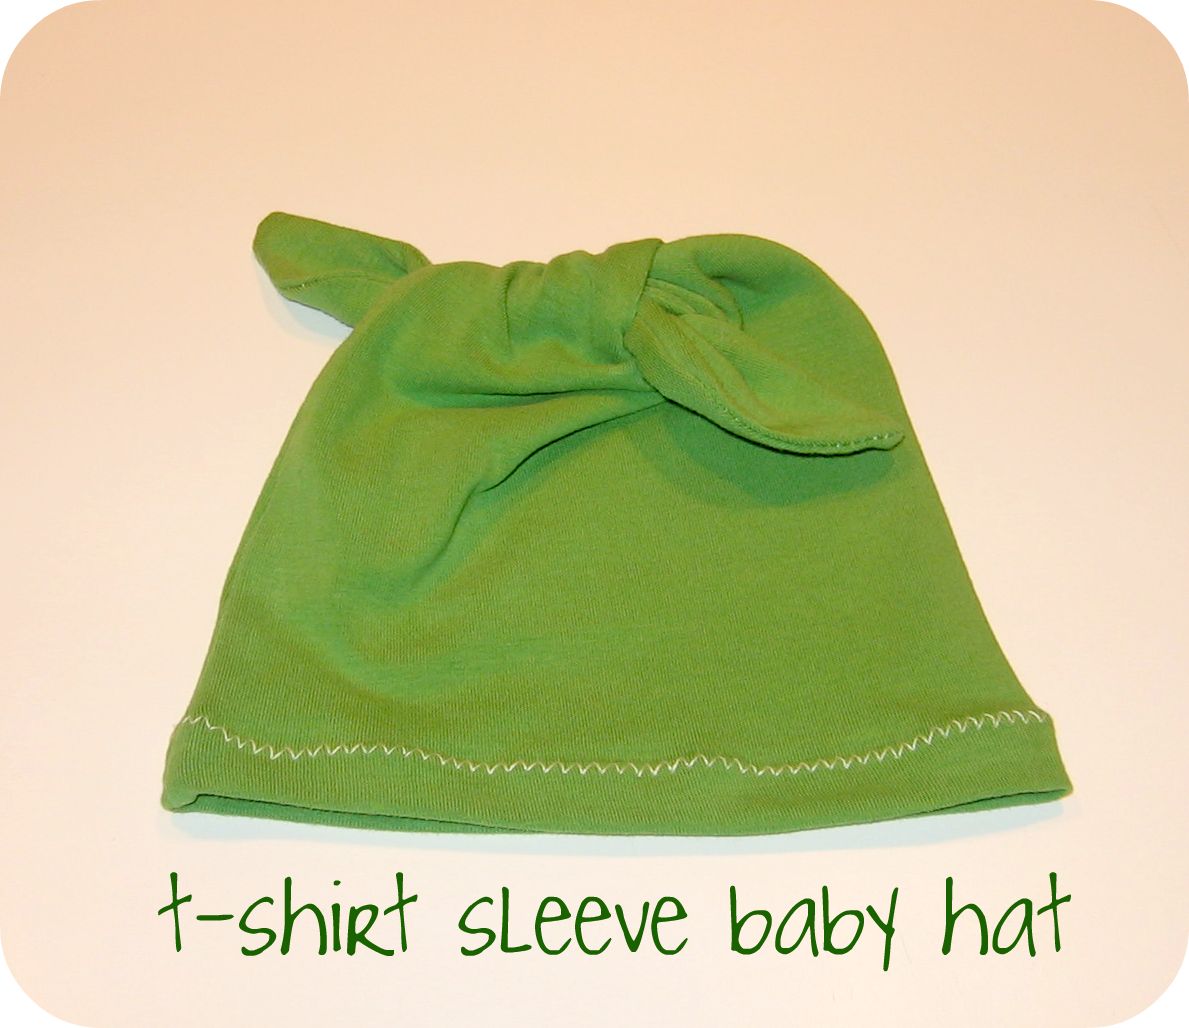 Tshirt sleeve baby hat